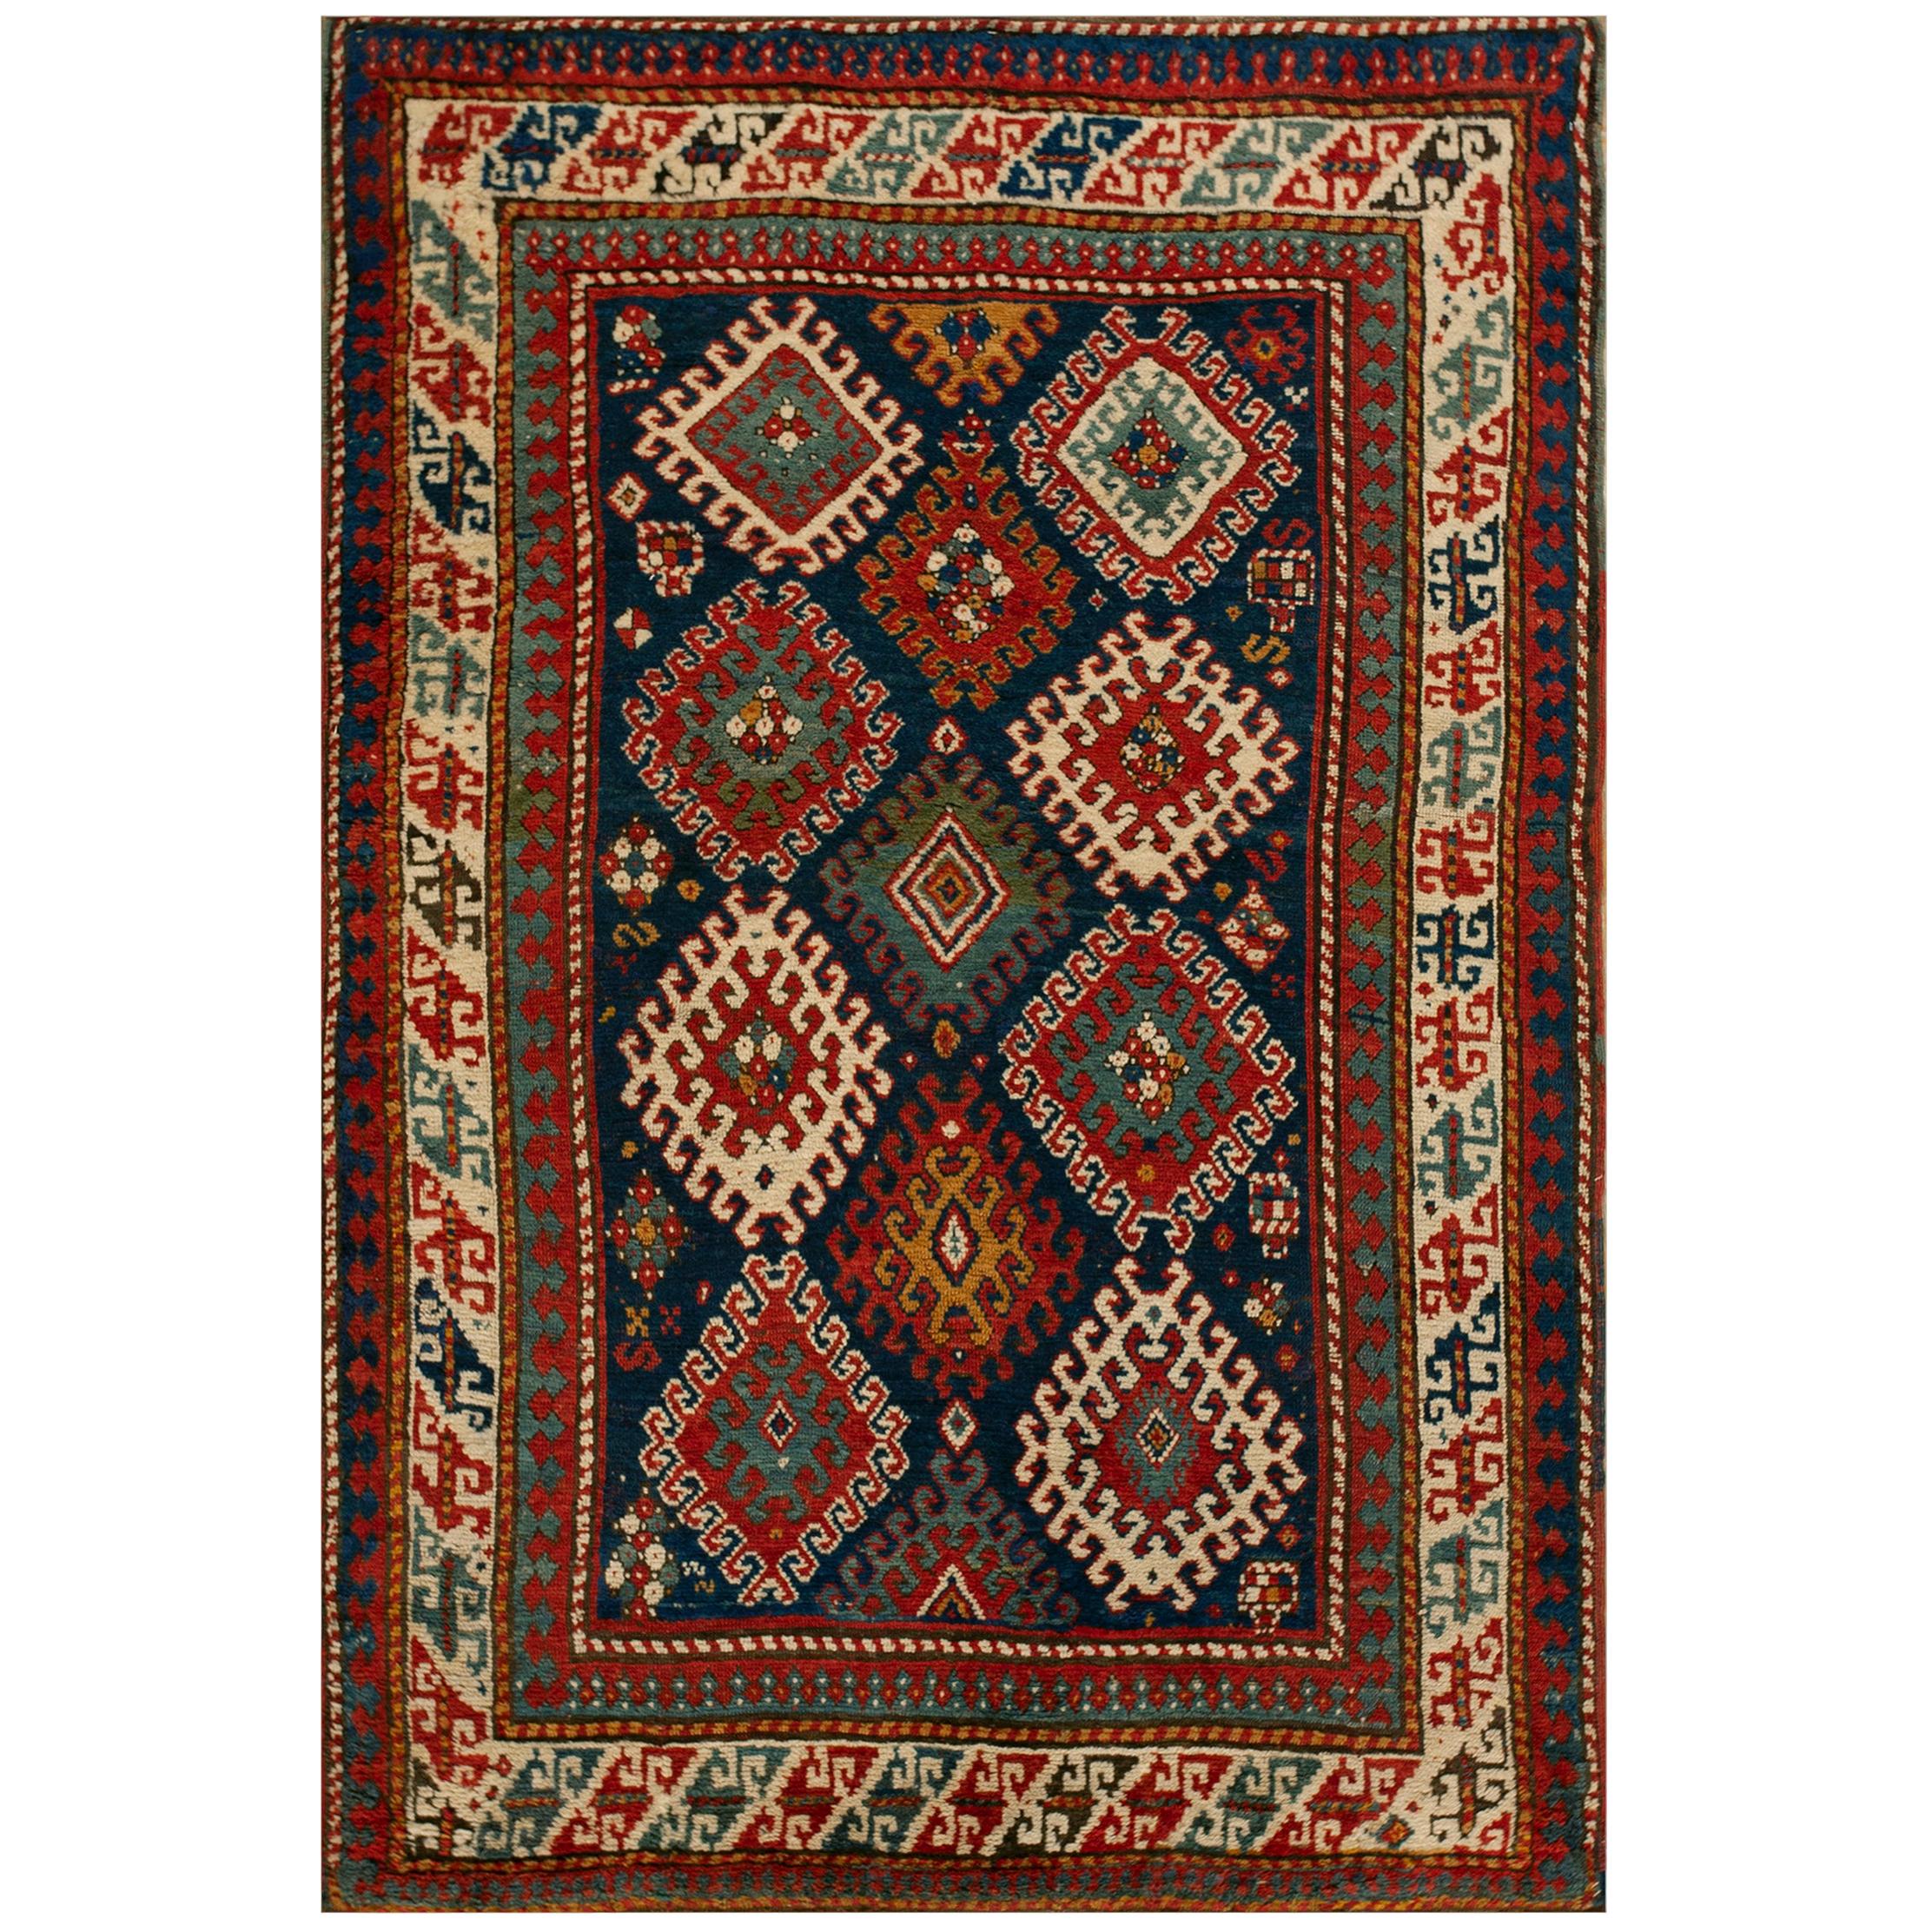 19th Century Caucasian Bordjalou Kazak Carpet ( 4'10" x 7'2" - 147 x 218 )